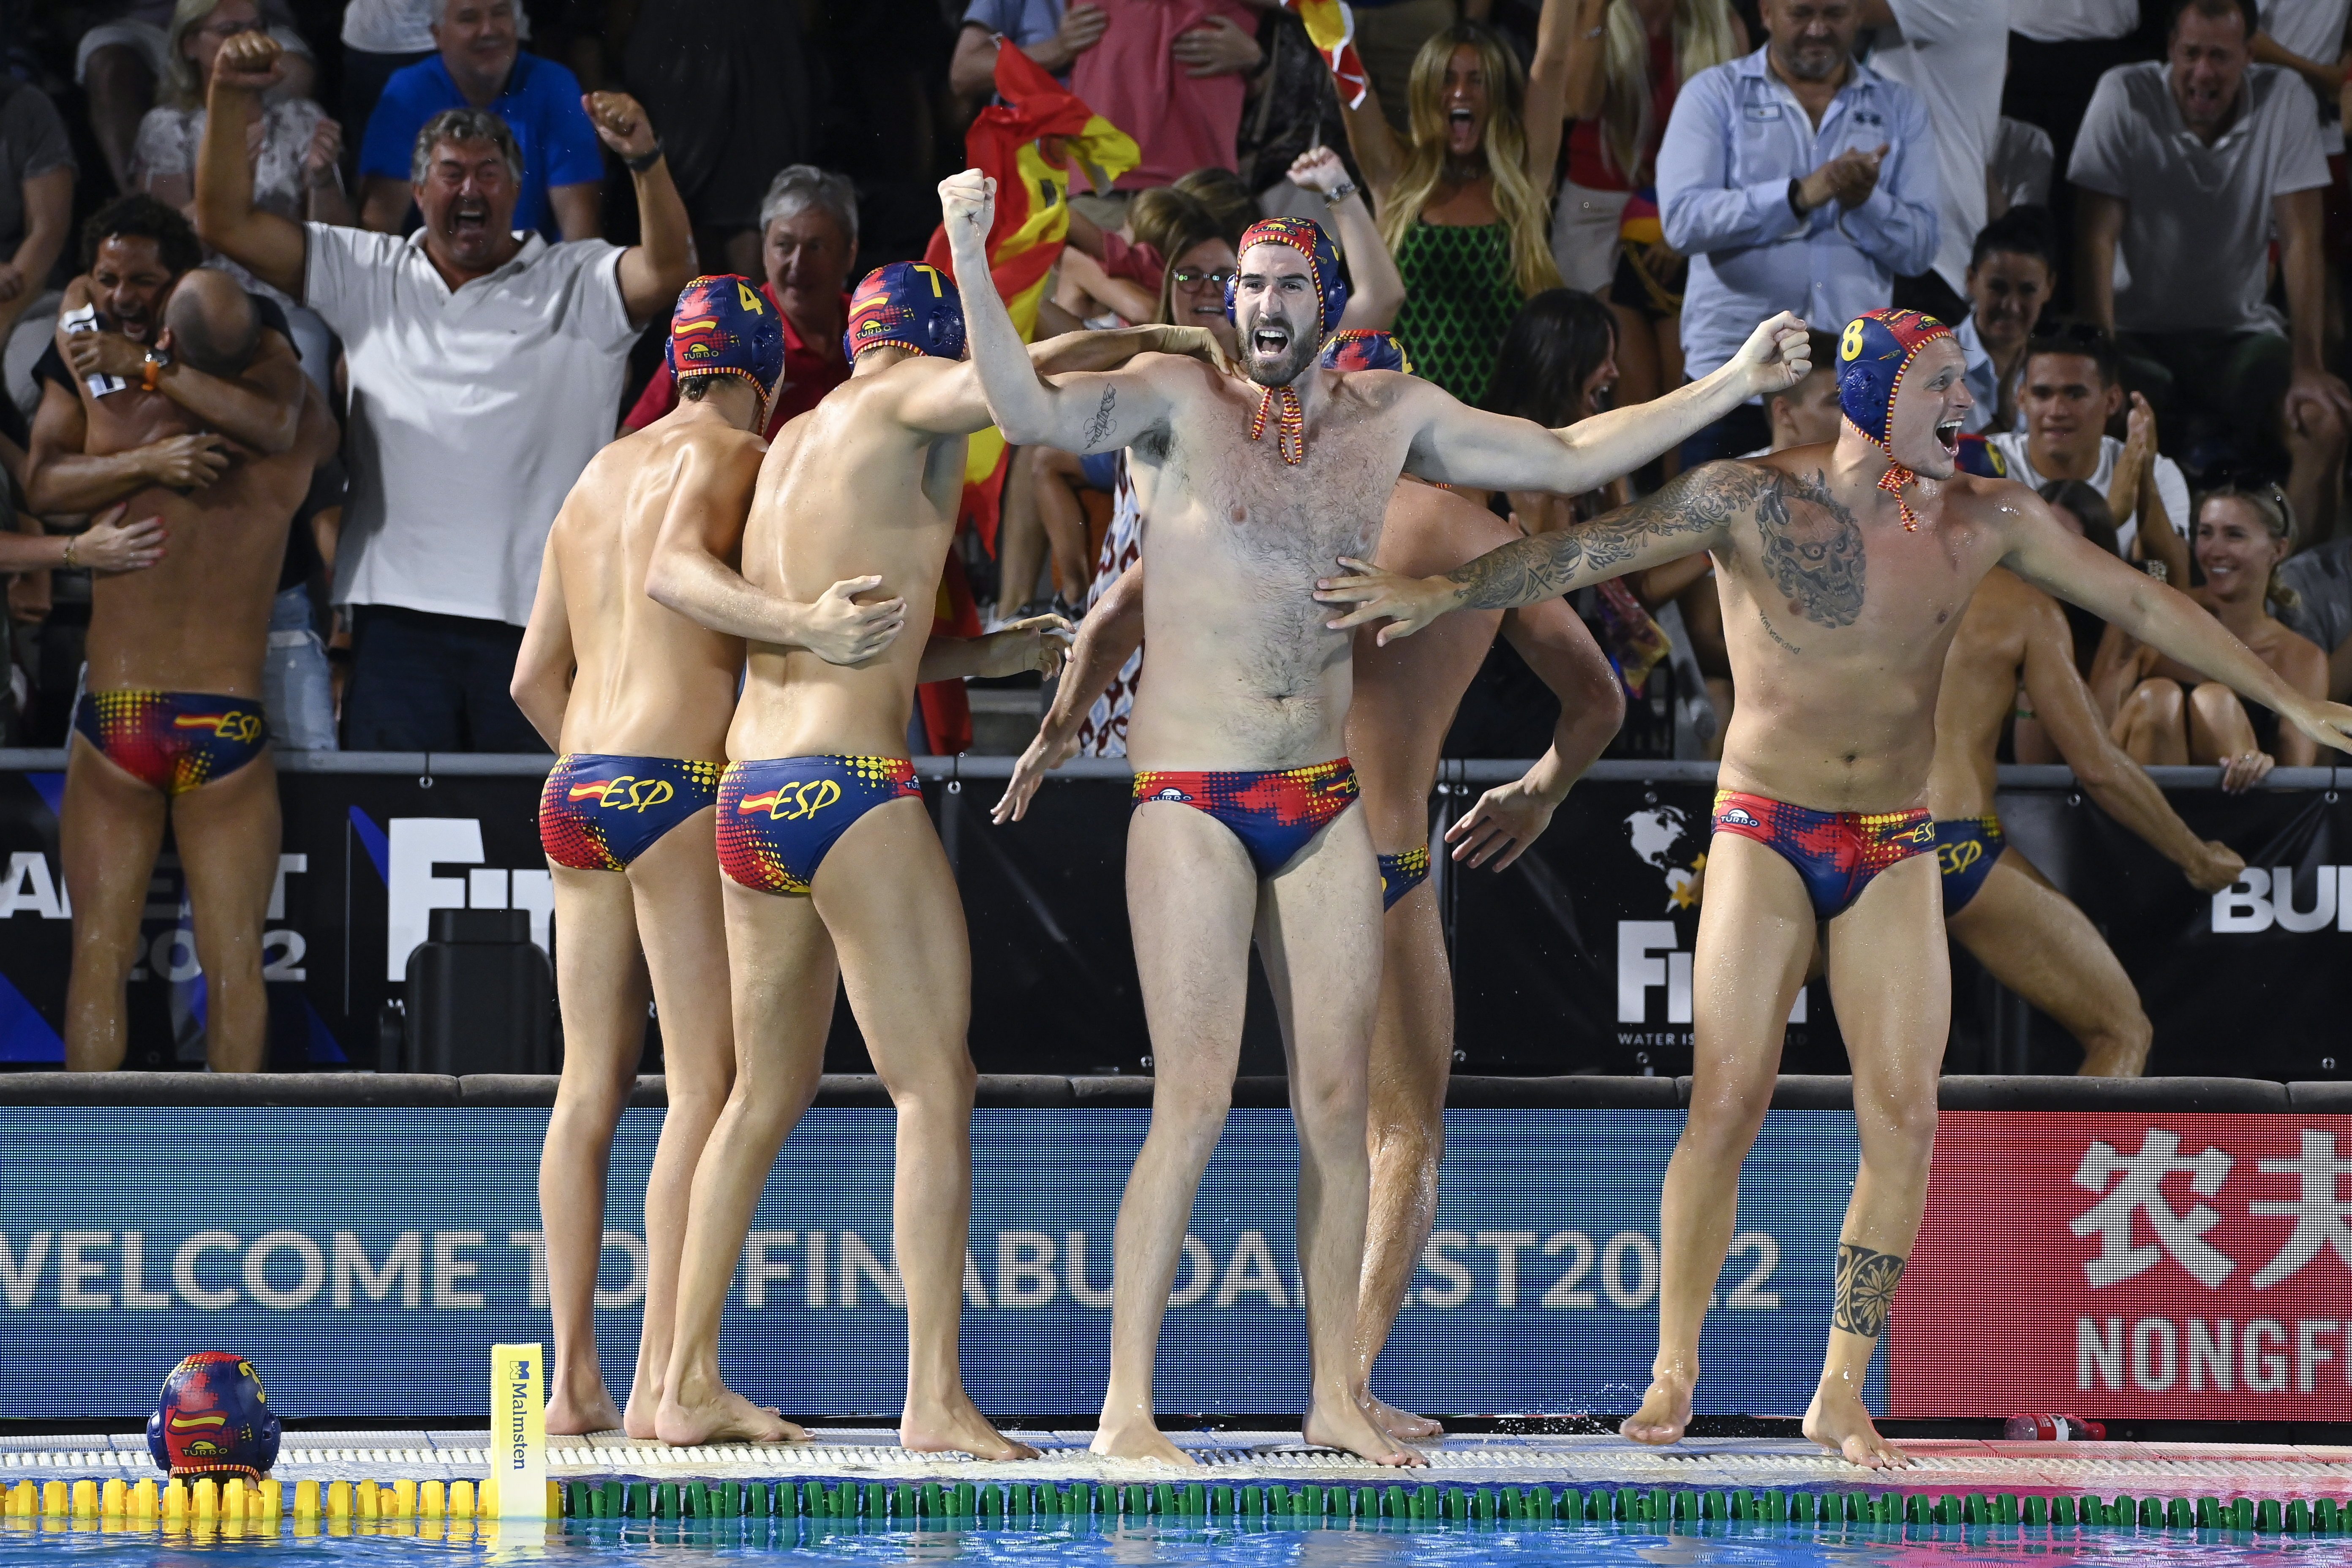 Espanya es venja d'Itàlia als penals i guanya el seu tercer Mundial de waterpolo (14-15)